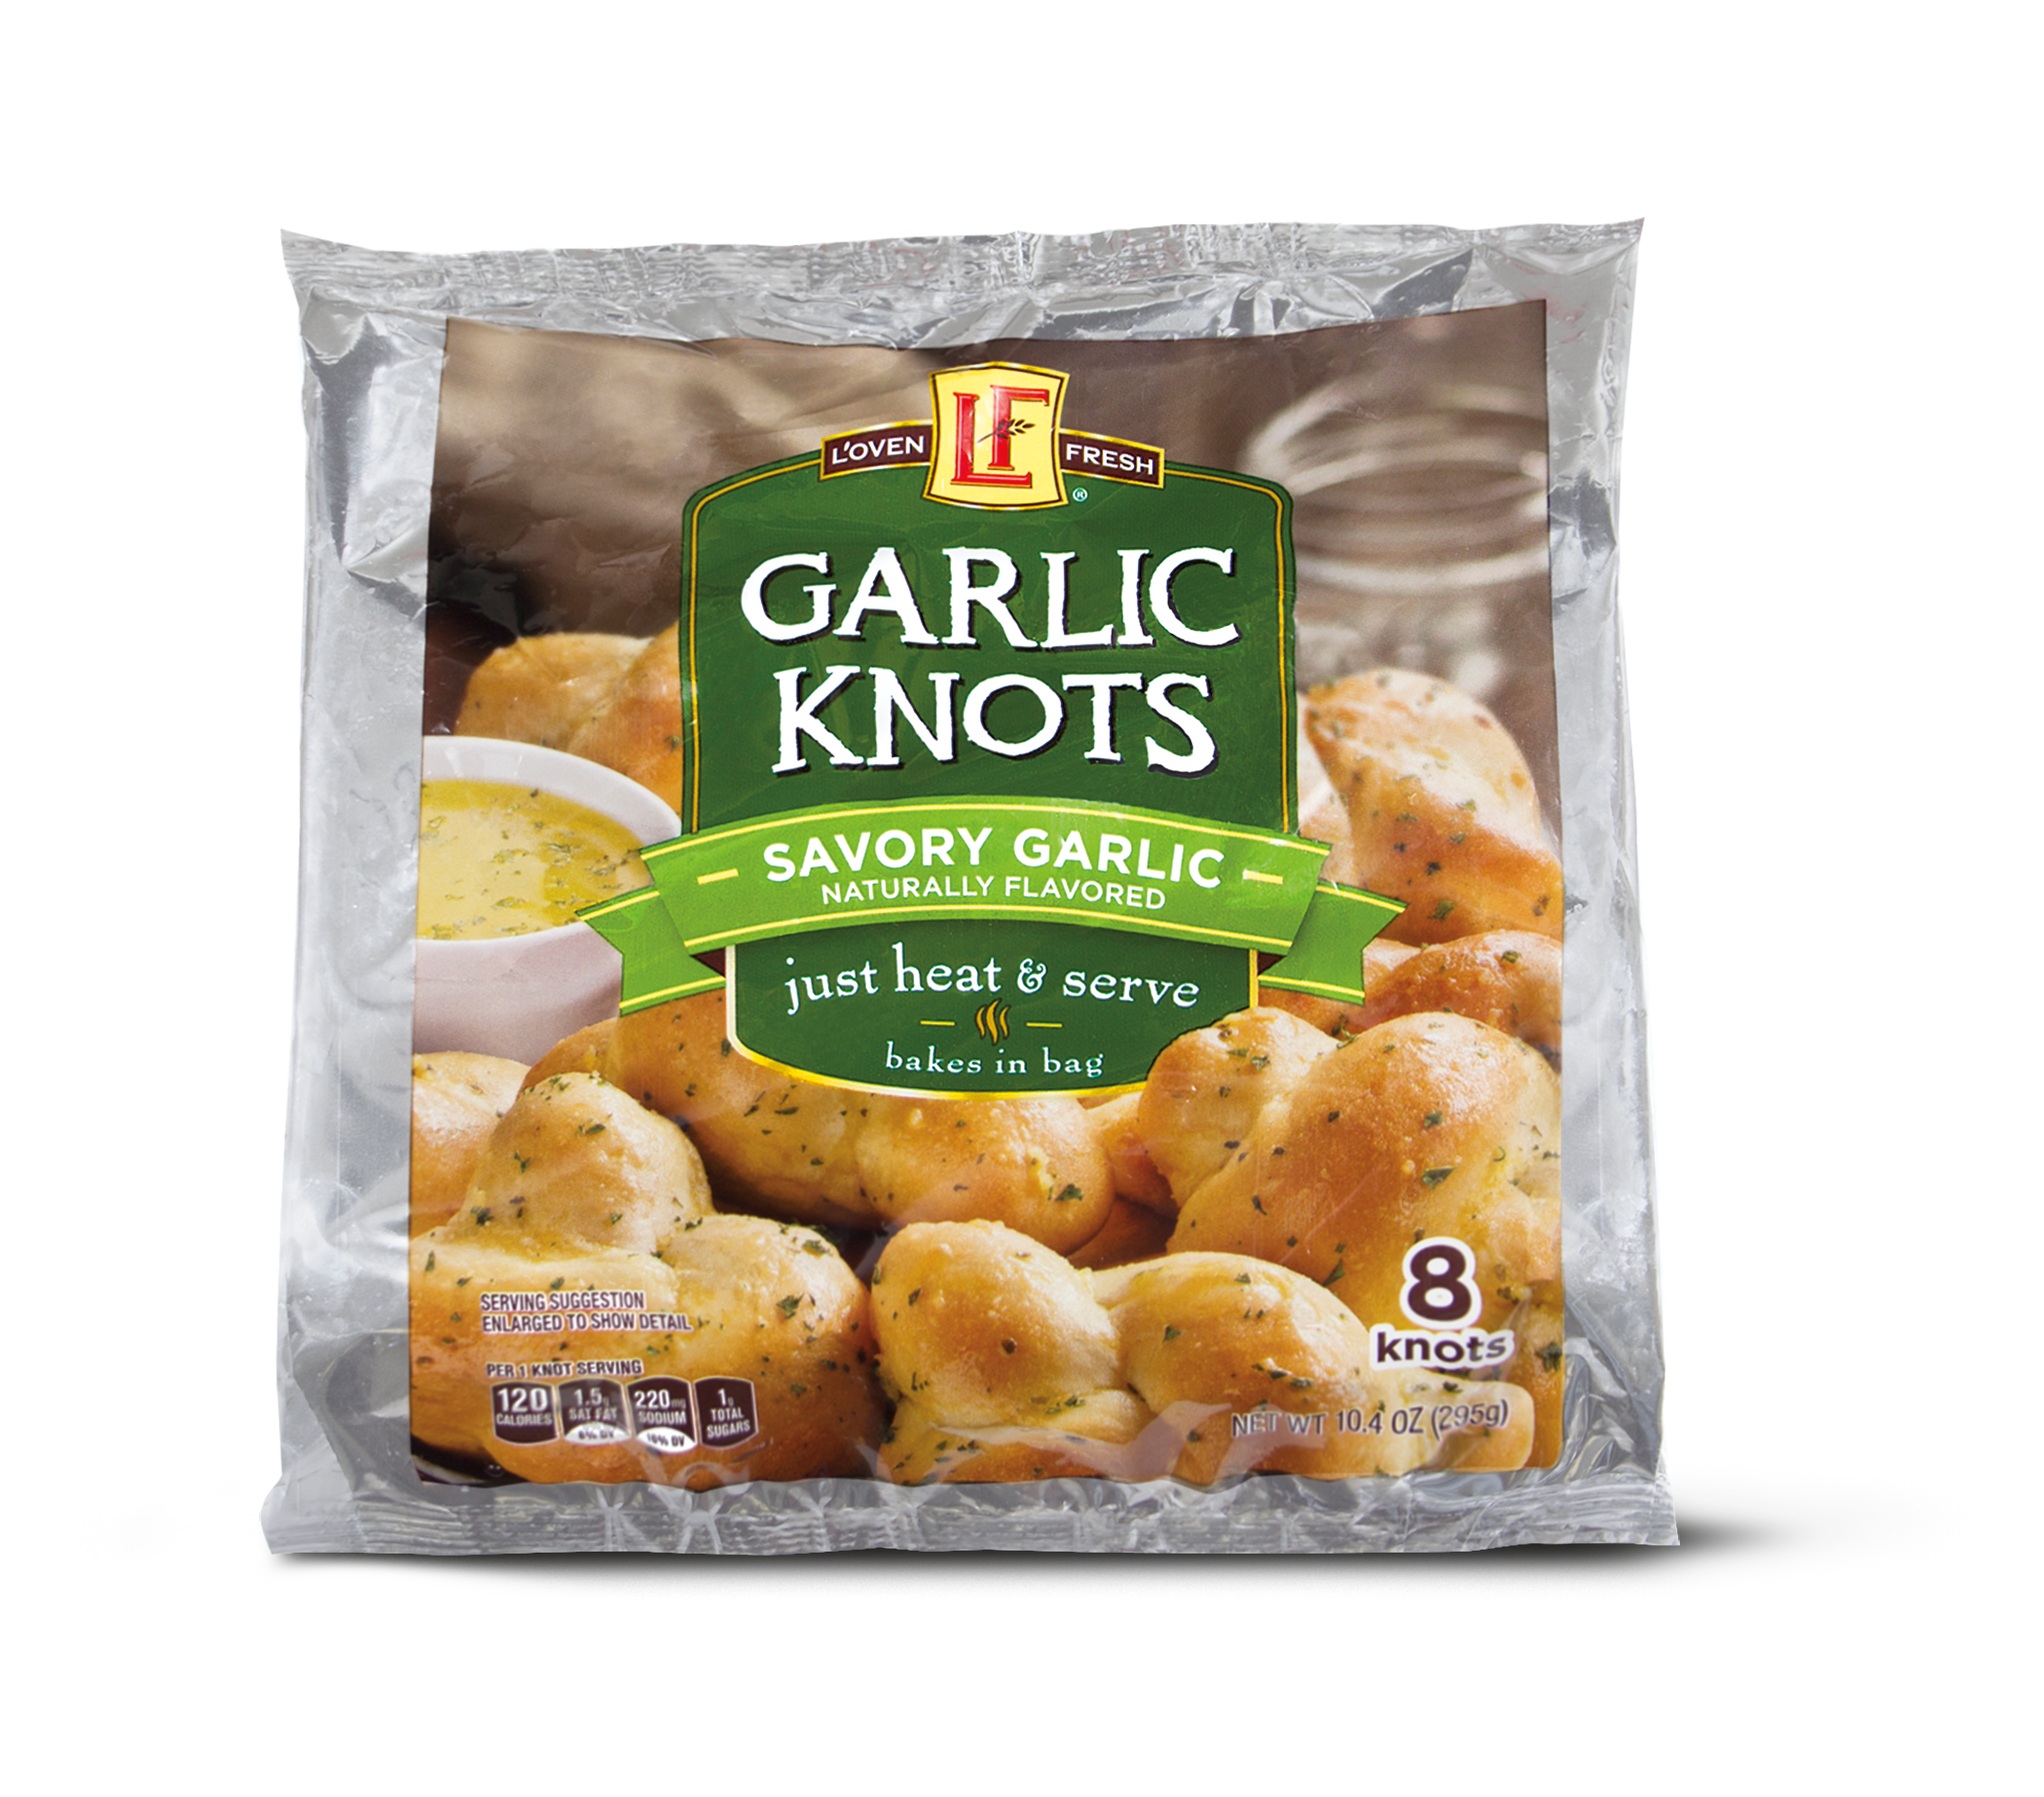 ALDI-exclusive L’oven Fresh Garlic Knots